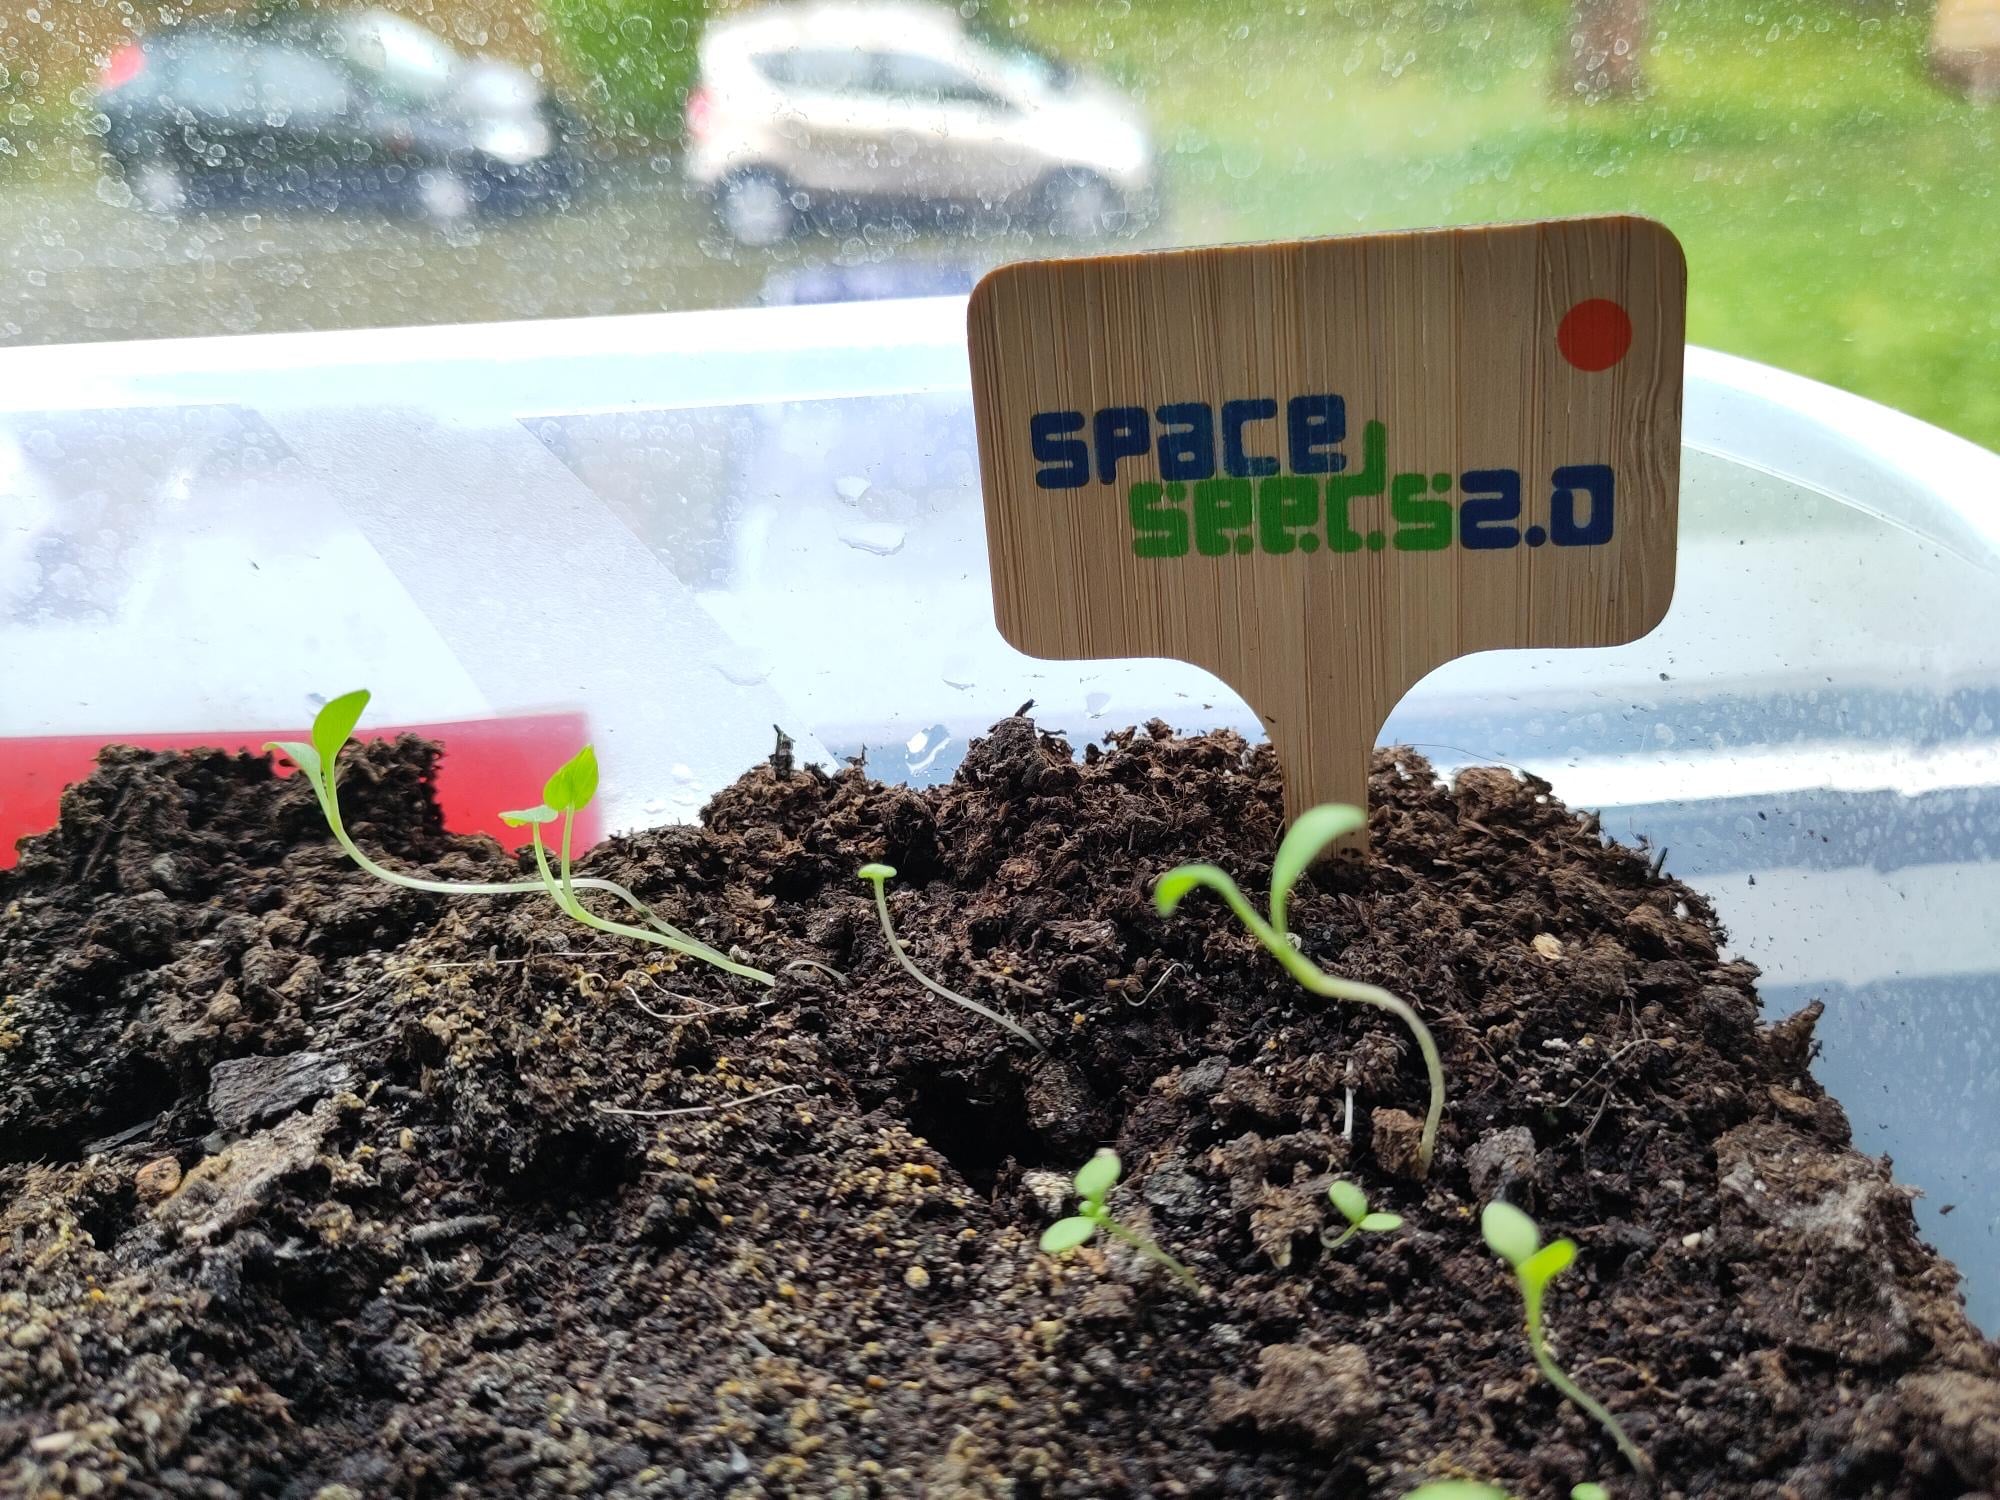 Space Seeds 2.0 Wildblumensamen aus dem All 